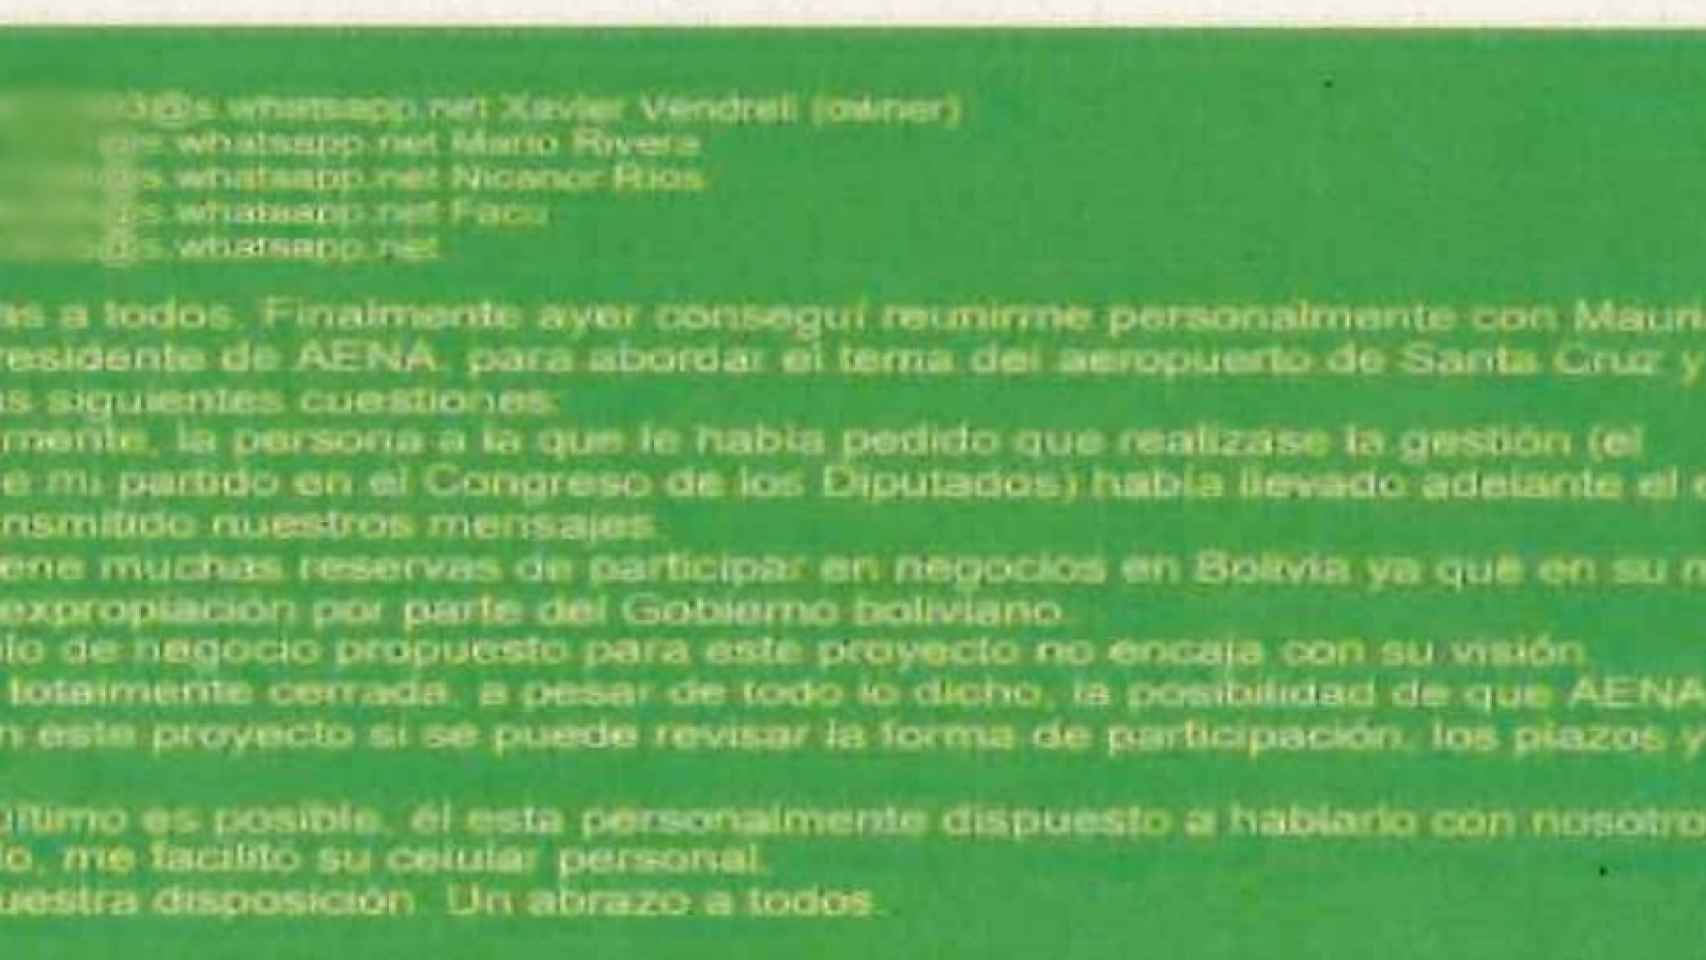 Xavier Vendrell comunica a sus socios, en un mensaje de Telegram, la negativa del presidente de AENA al proyecto de Bolivia.